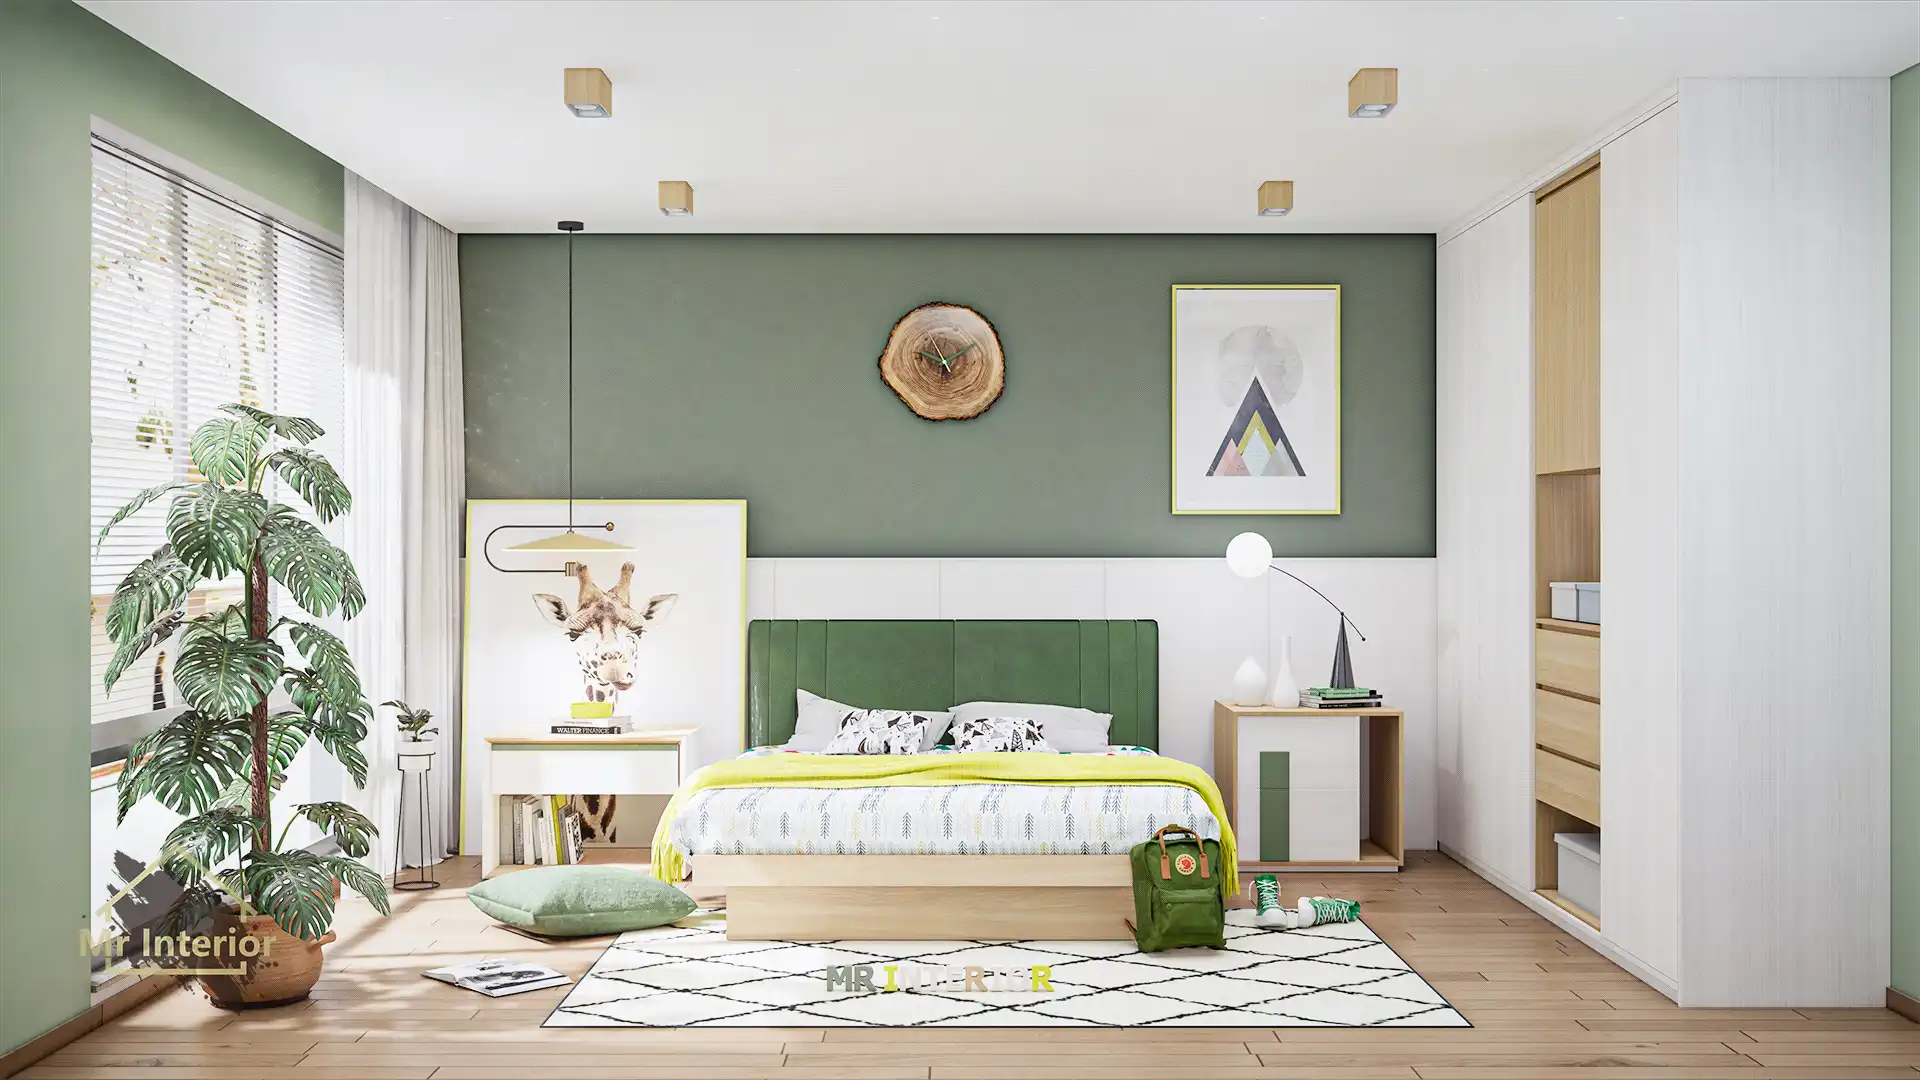 立夏-北歐風設計風格房間，白色主調，綠色木色點綴。雙人床，衣櫃，床頭櫃。Mr Interior室內設計、裝修、傢俬風格。